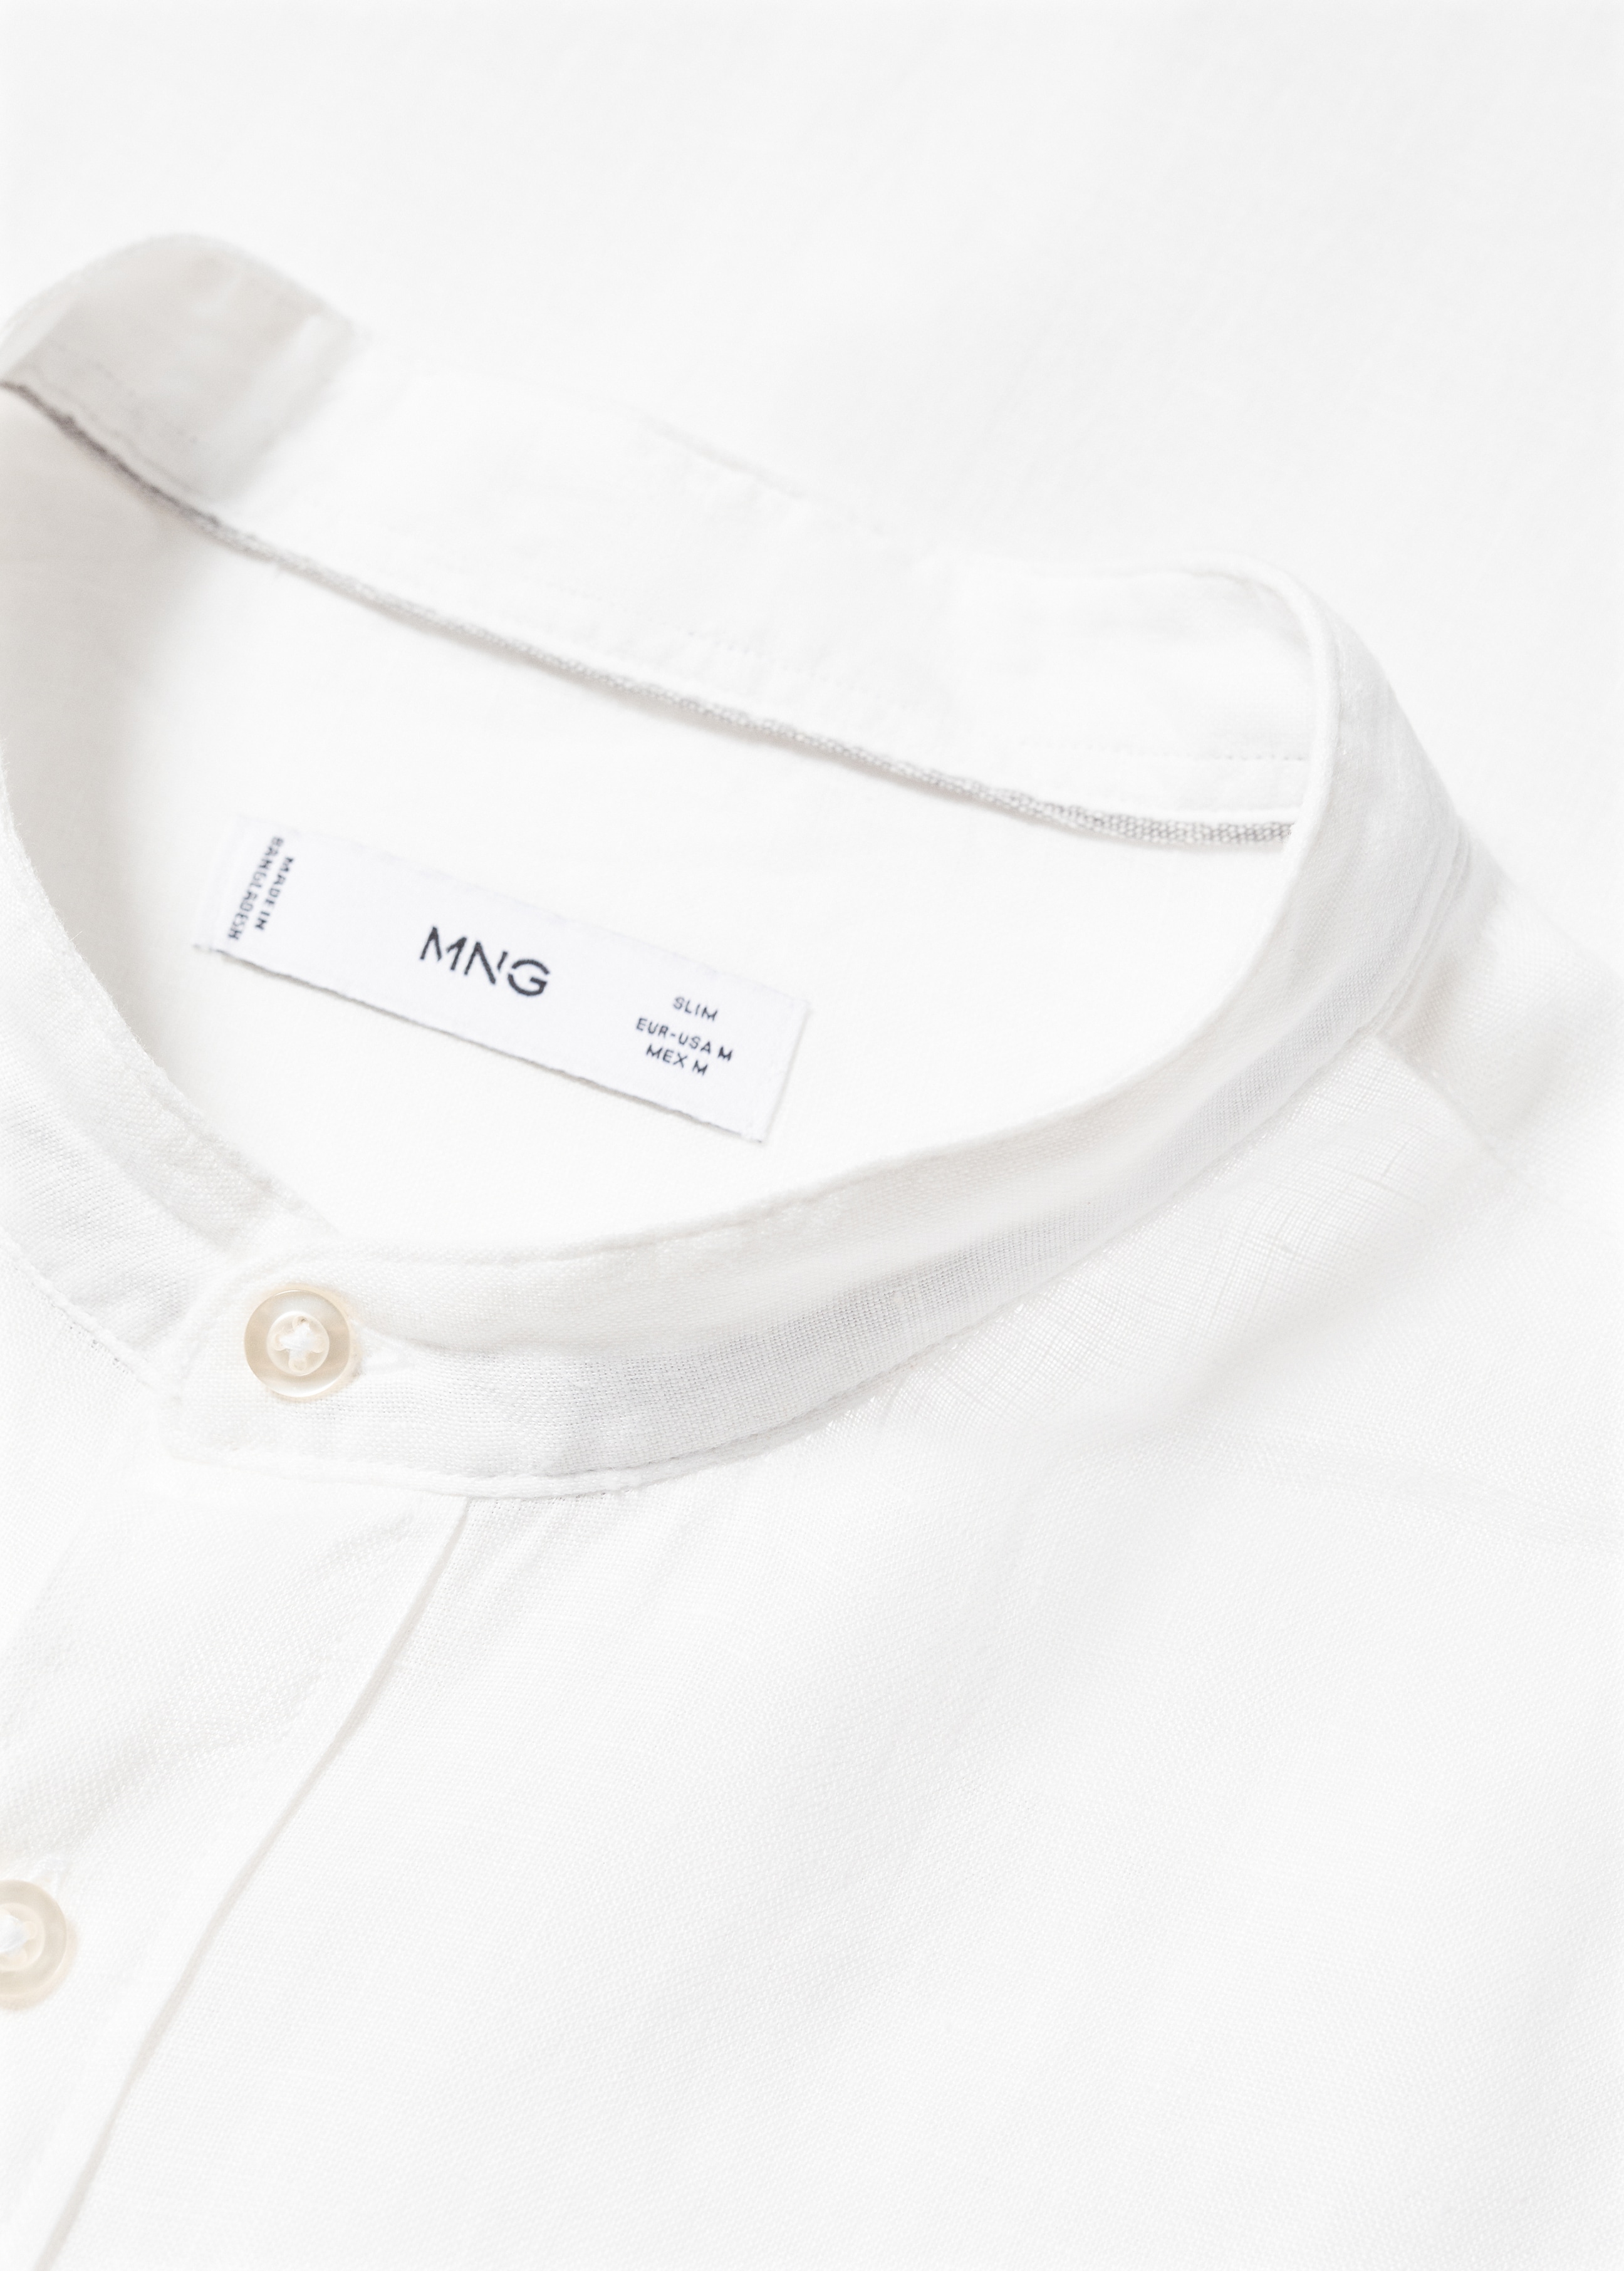 100% linen Mao collar shirt - Details of the article 8